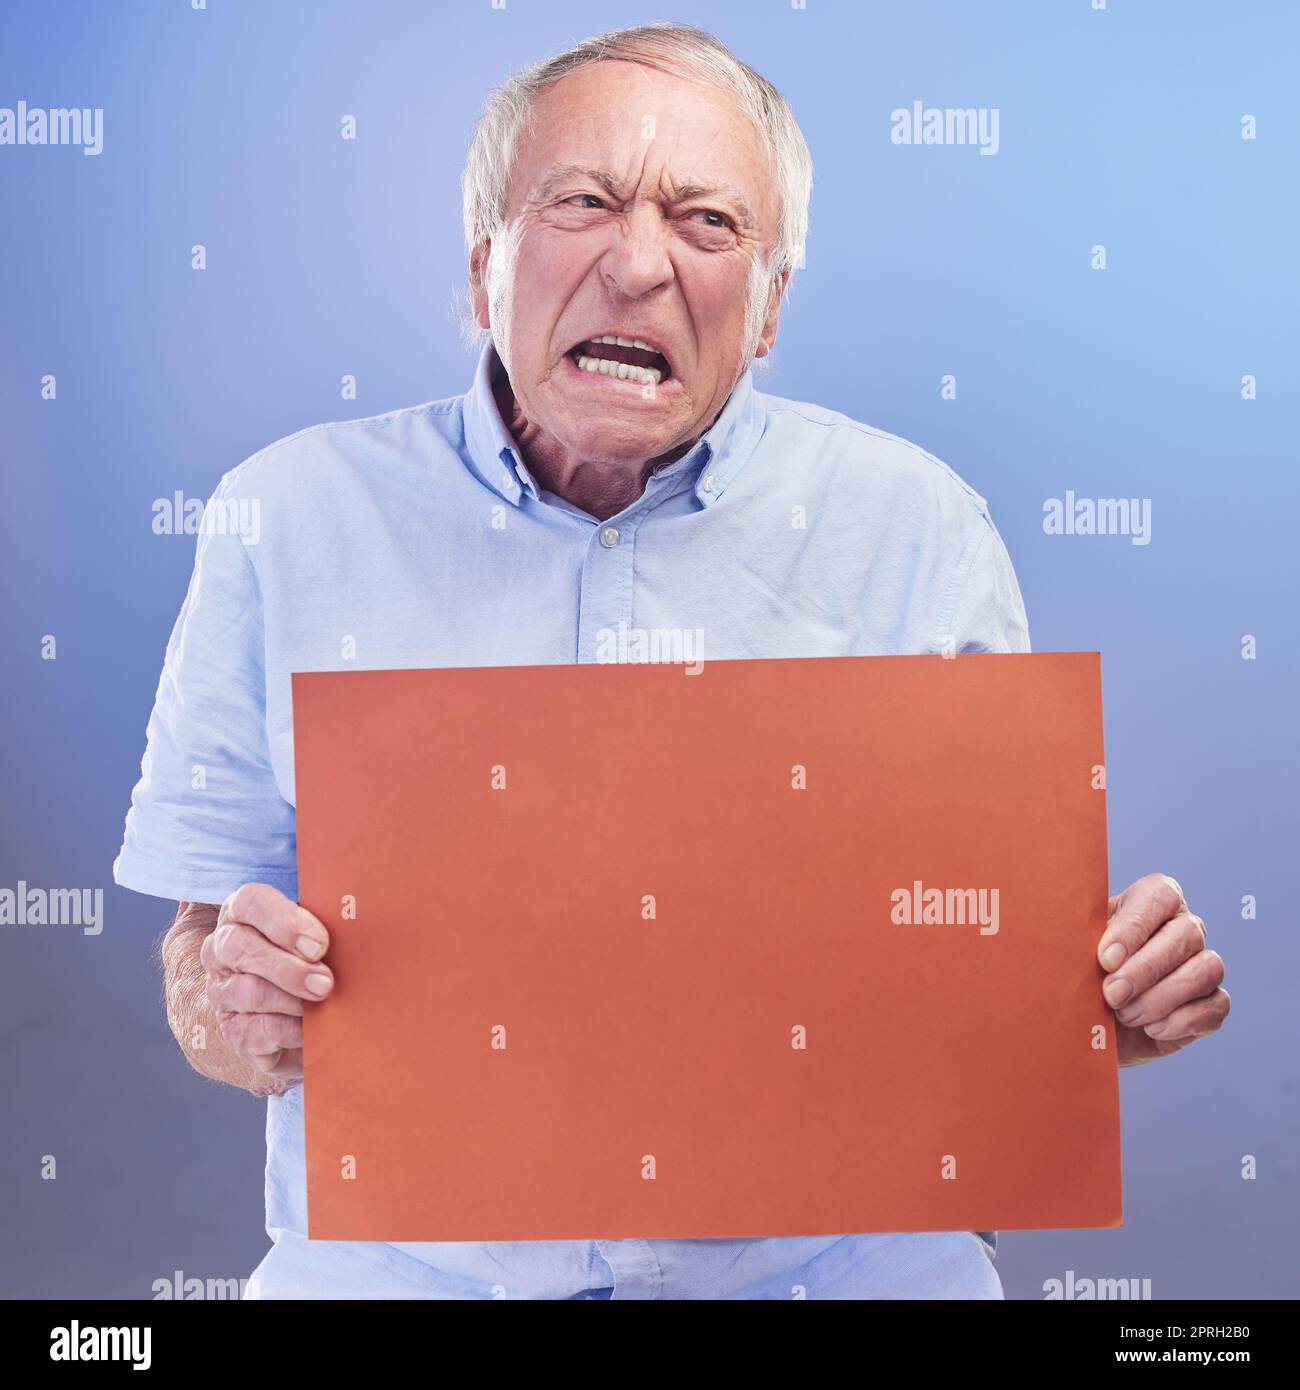 Grumpy Ill zeigt dir Grumpy. Studiofoto eines Seniorenmannes mit einem leeren Schild, der vor blauem Hintergrund unglücklich aussah Stockfoto